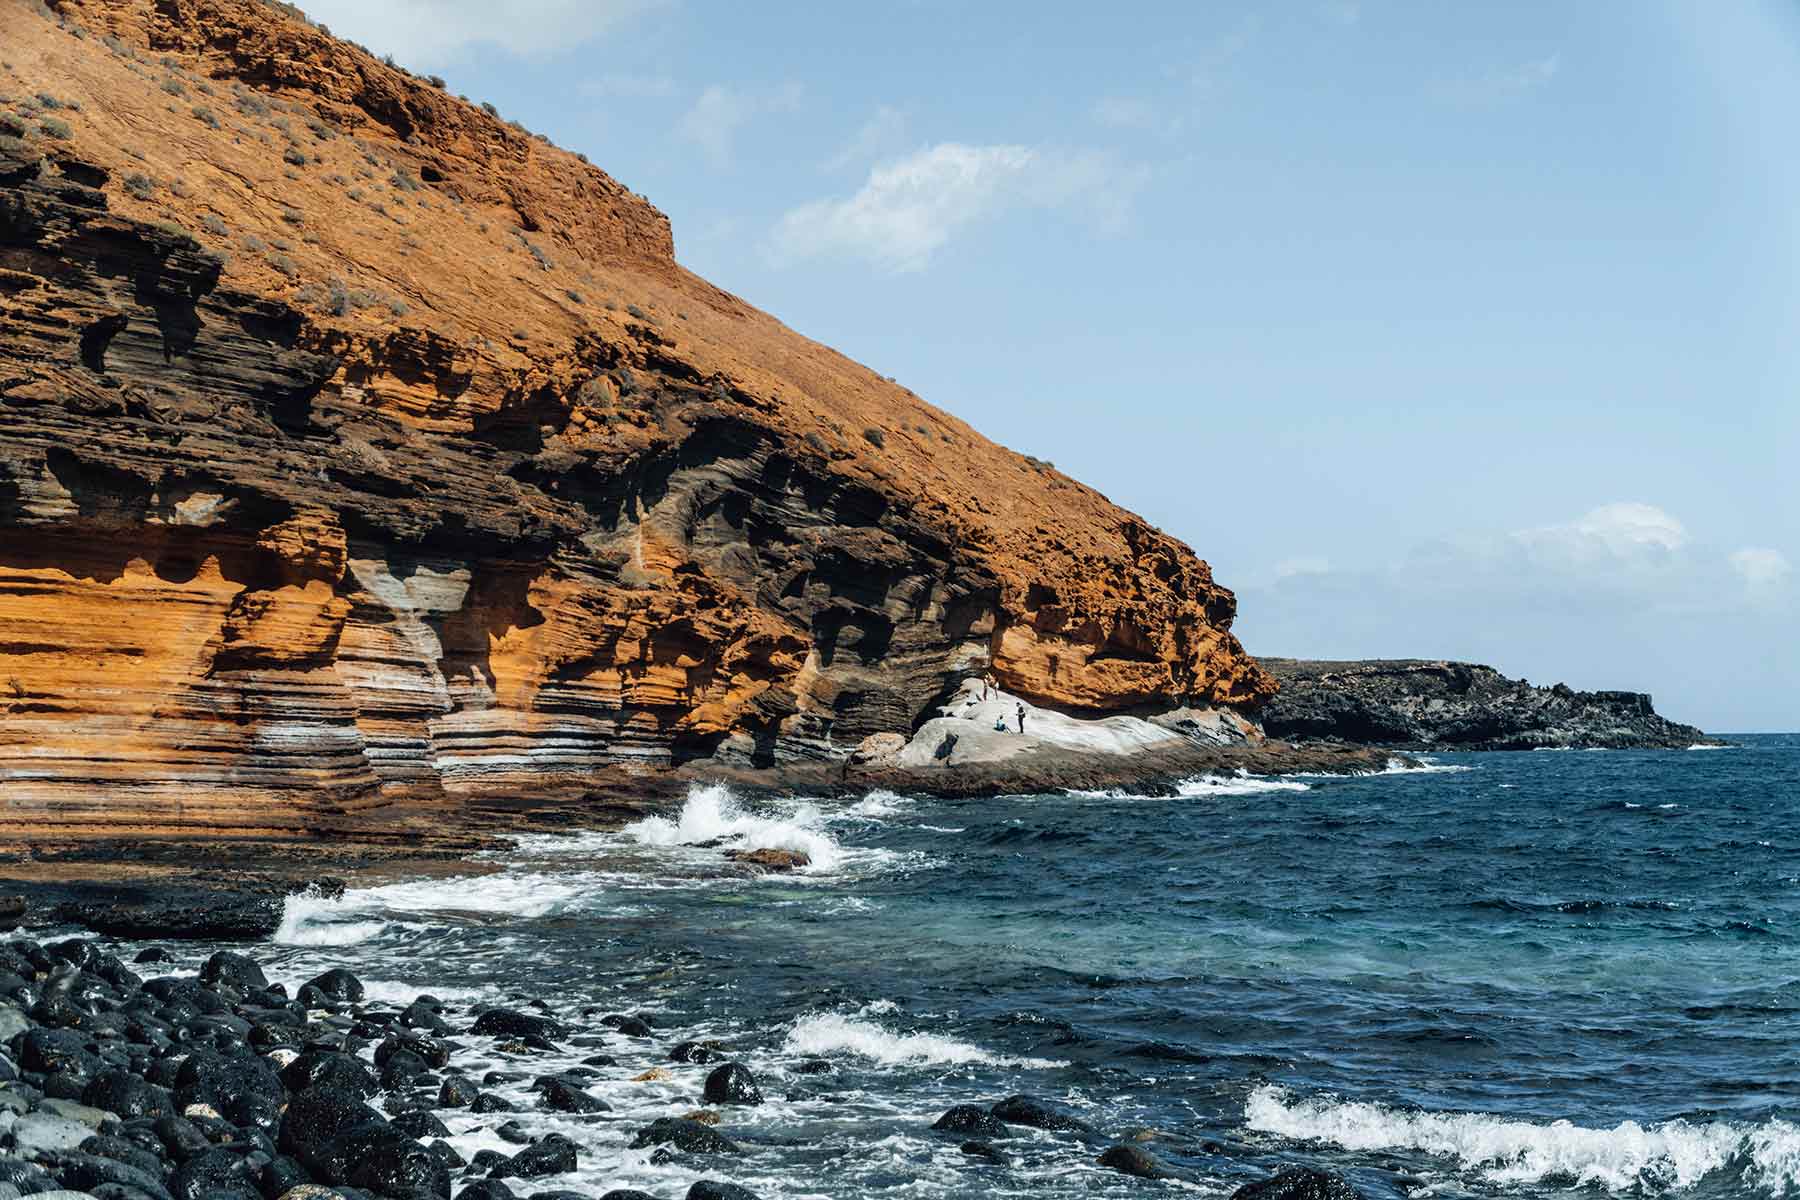 Playa Amarilla in Costa del Silencio, Tenerife